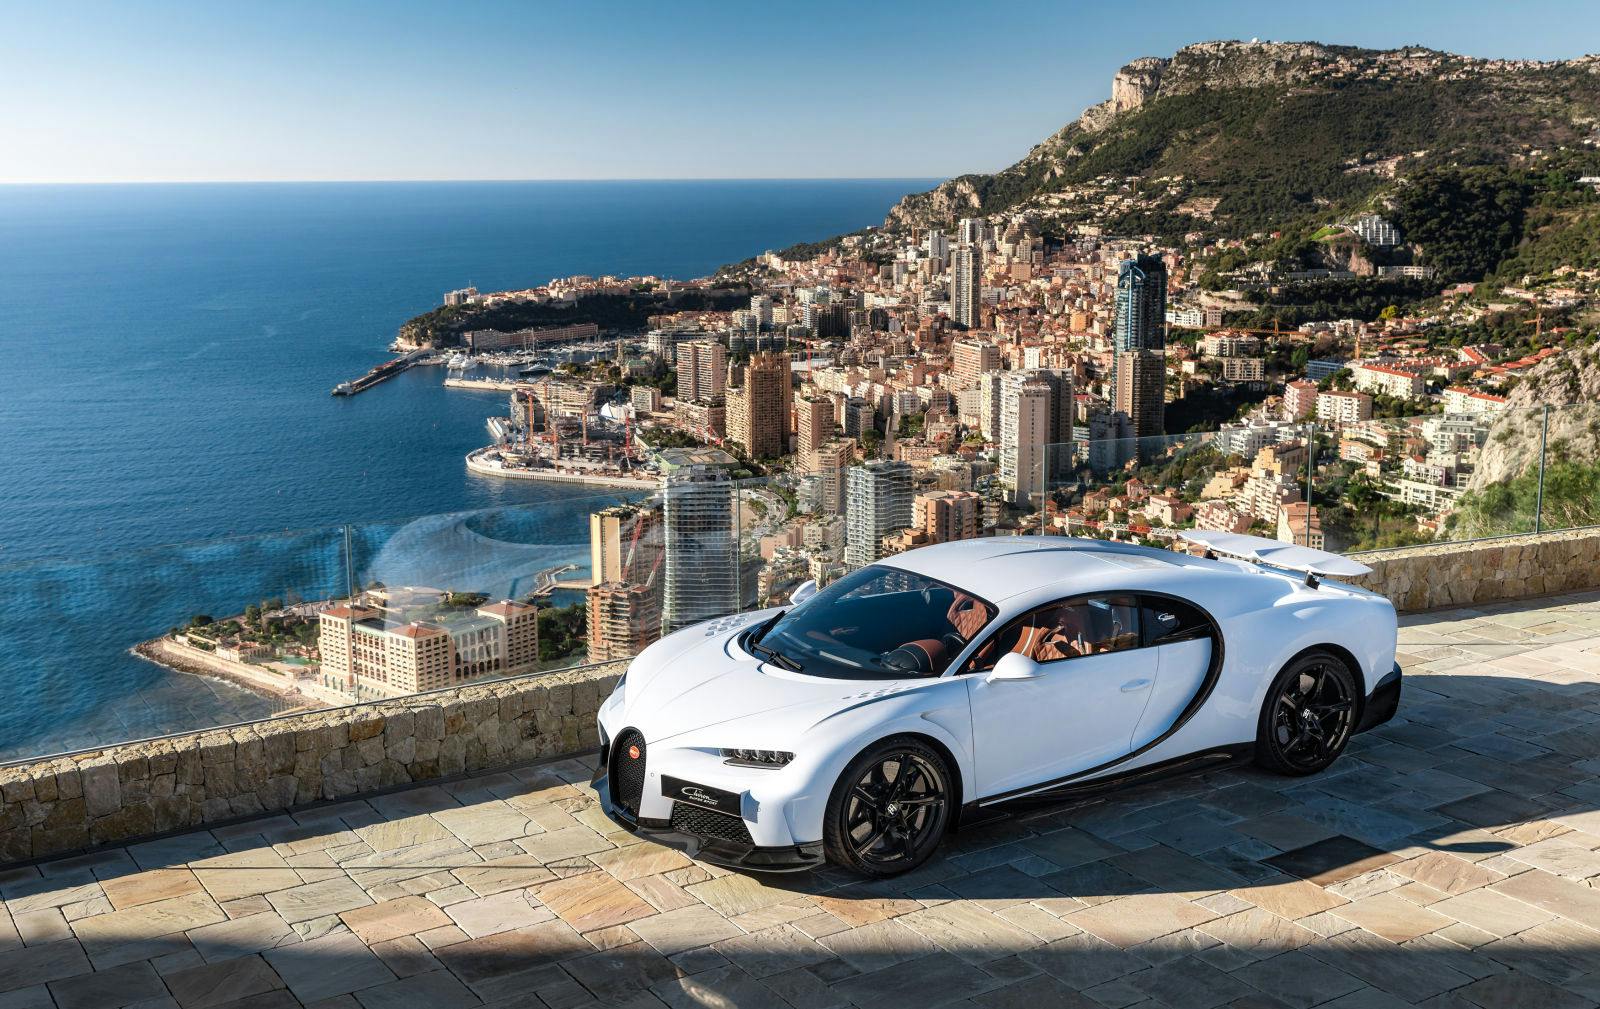 La Bugatti Chiron Super Sport à Monaco, un joyau de la "French Riviera" situé à l'apogée du luxe européen.